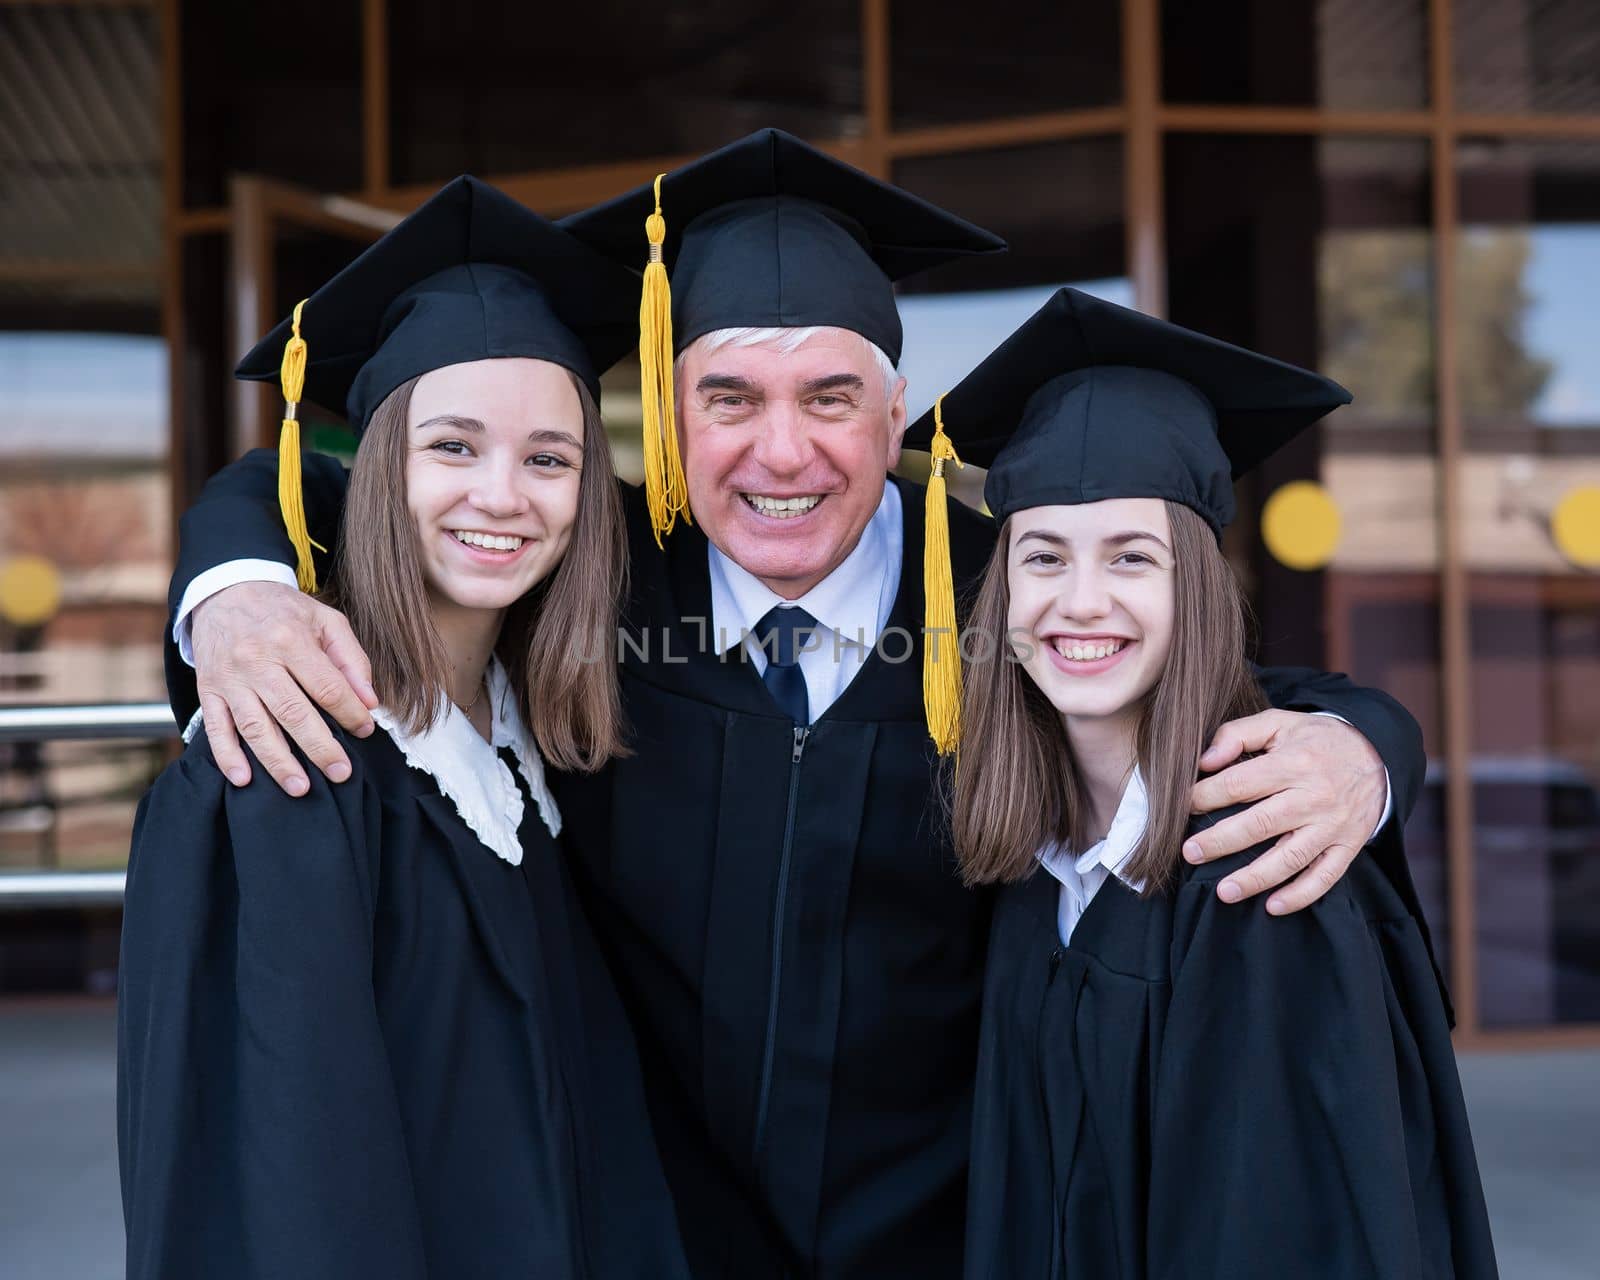 An elderly man hugs young girls. Classmates in graduation gowns